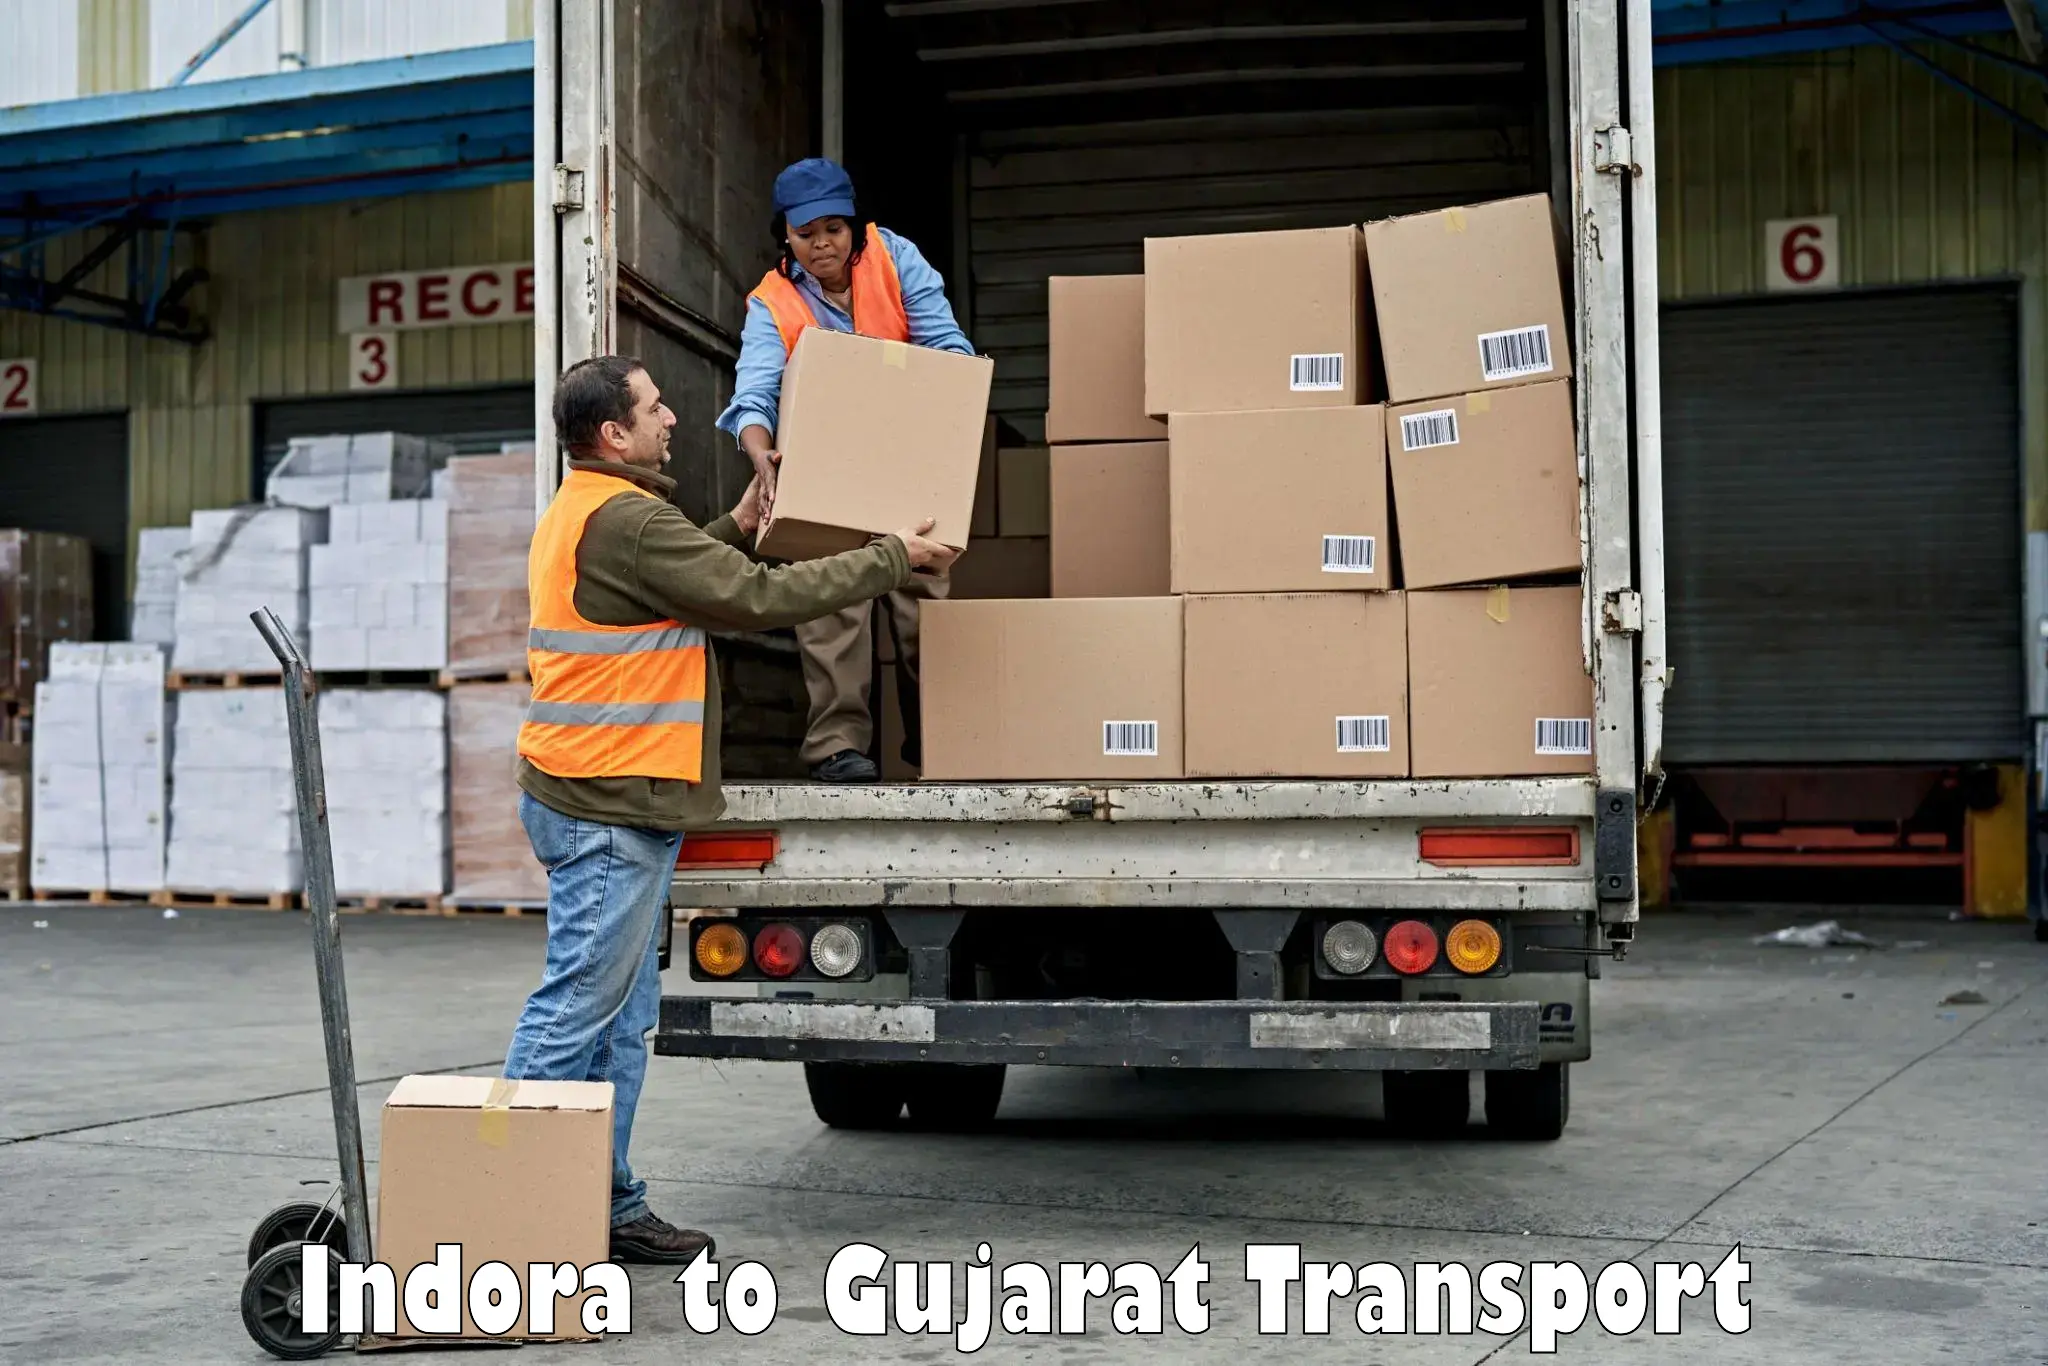 Nearest transport service Indora to Gondal